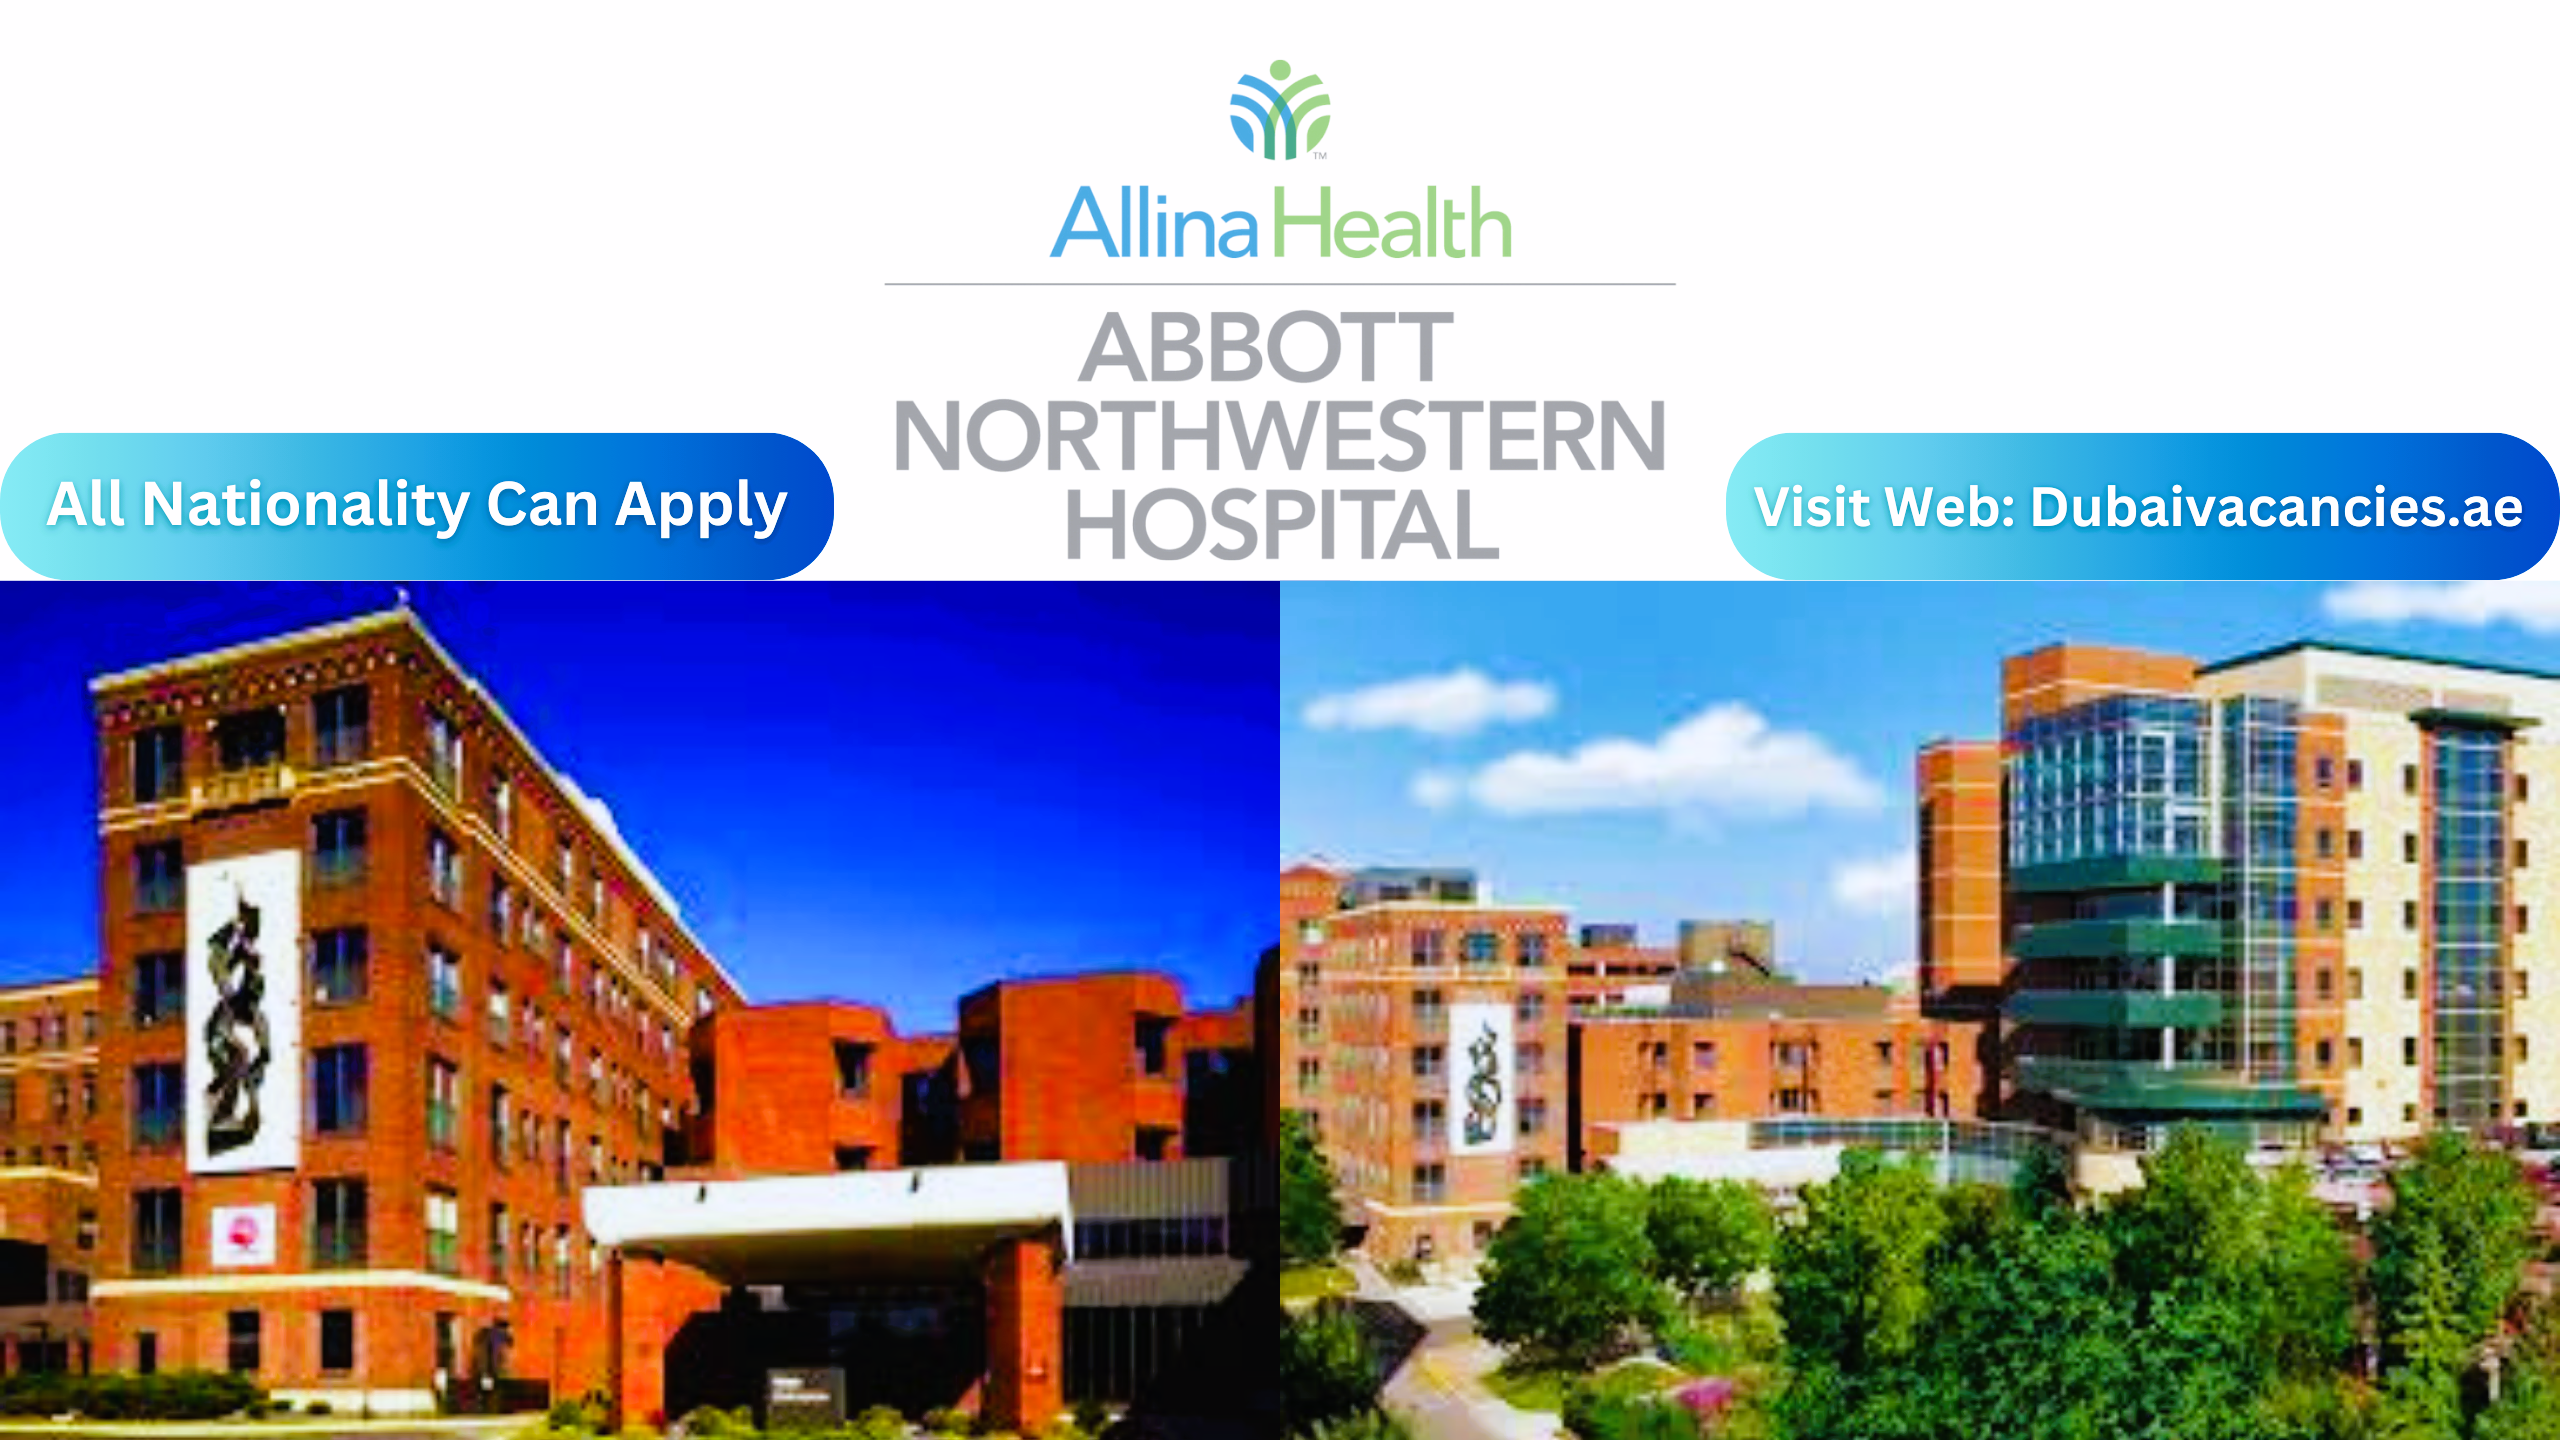 Abbott Northwestern Hospital Careers